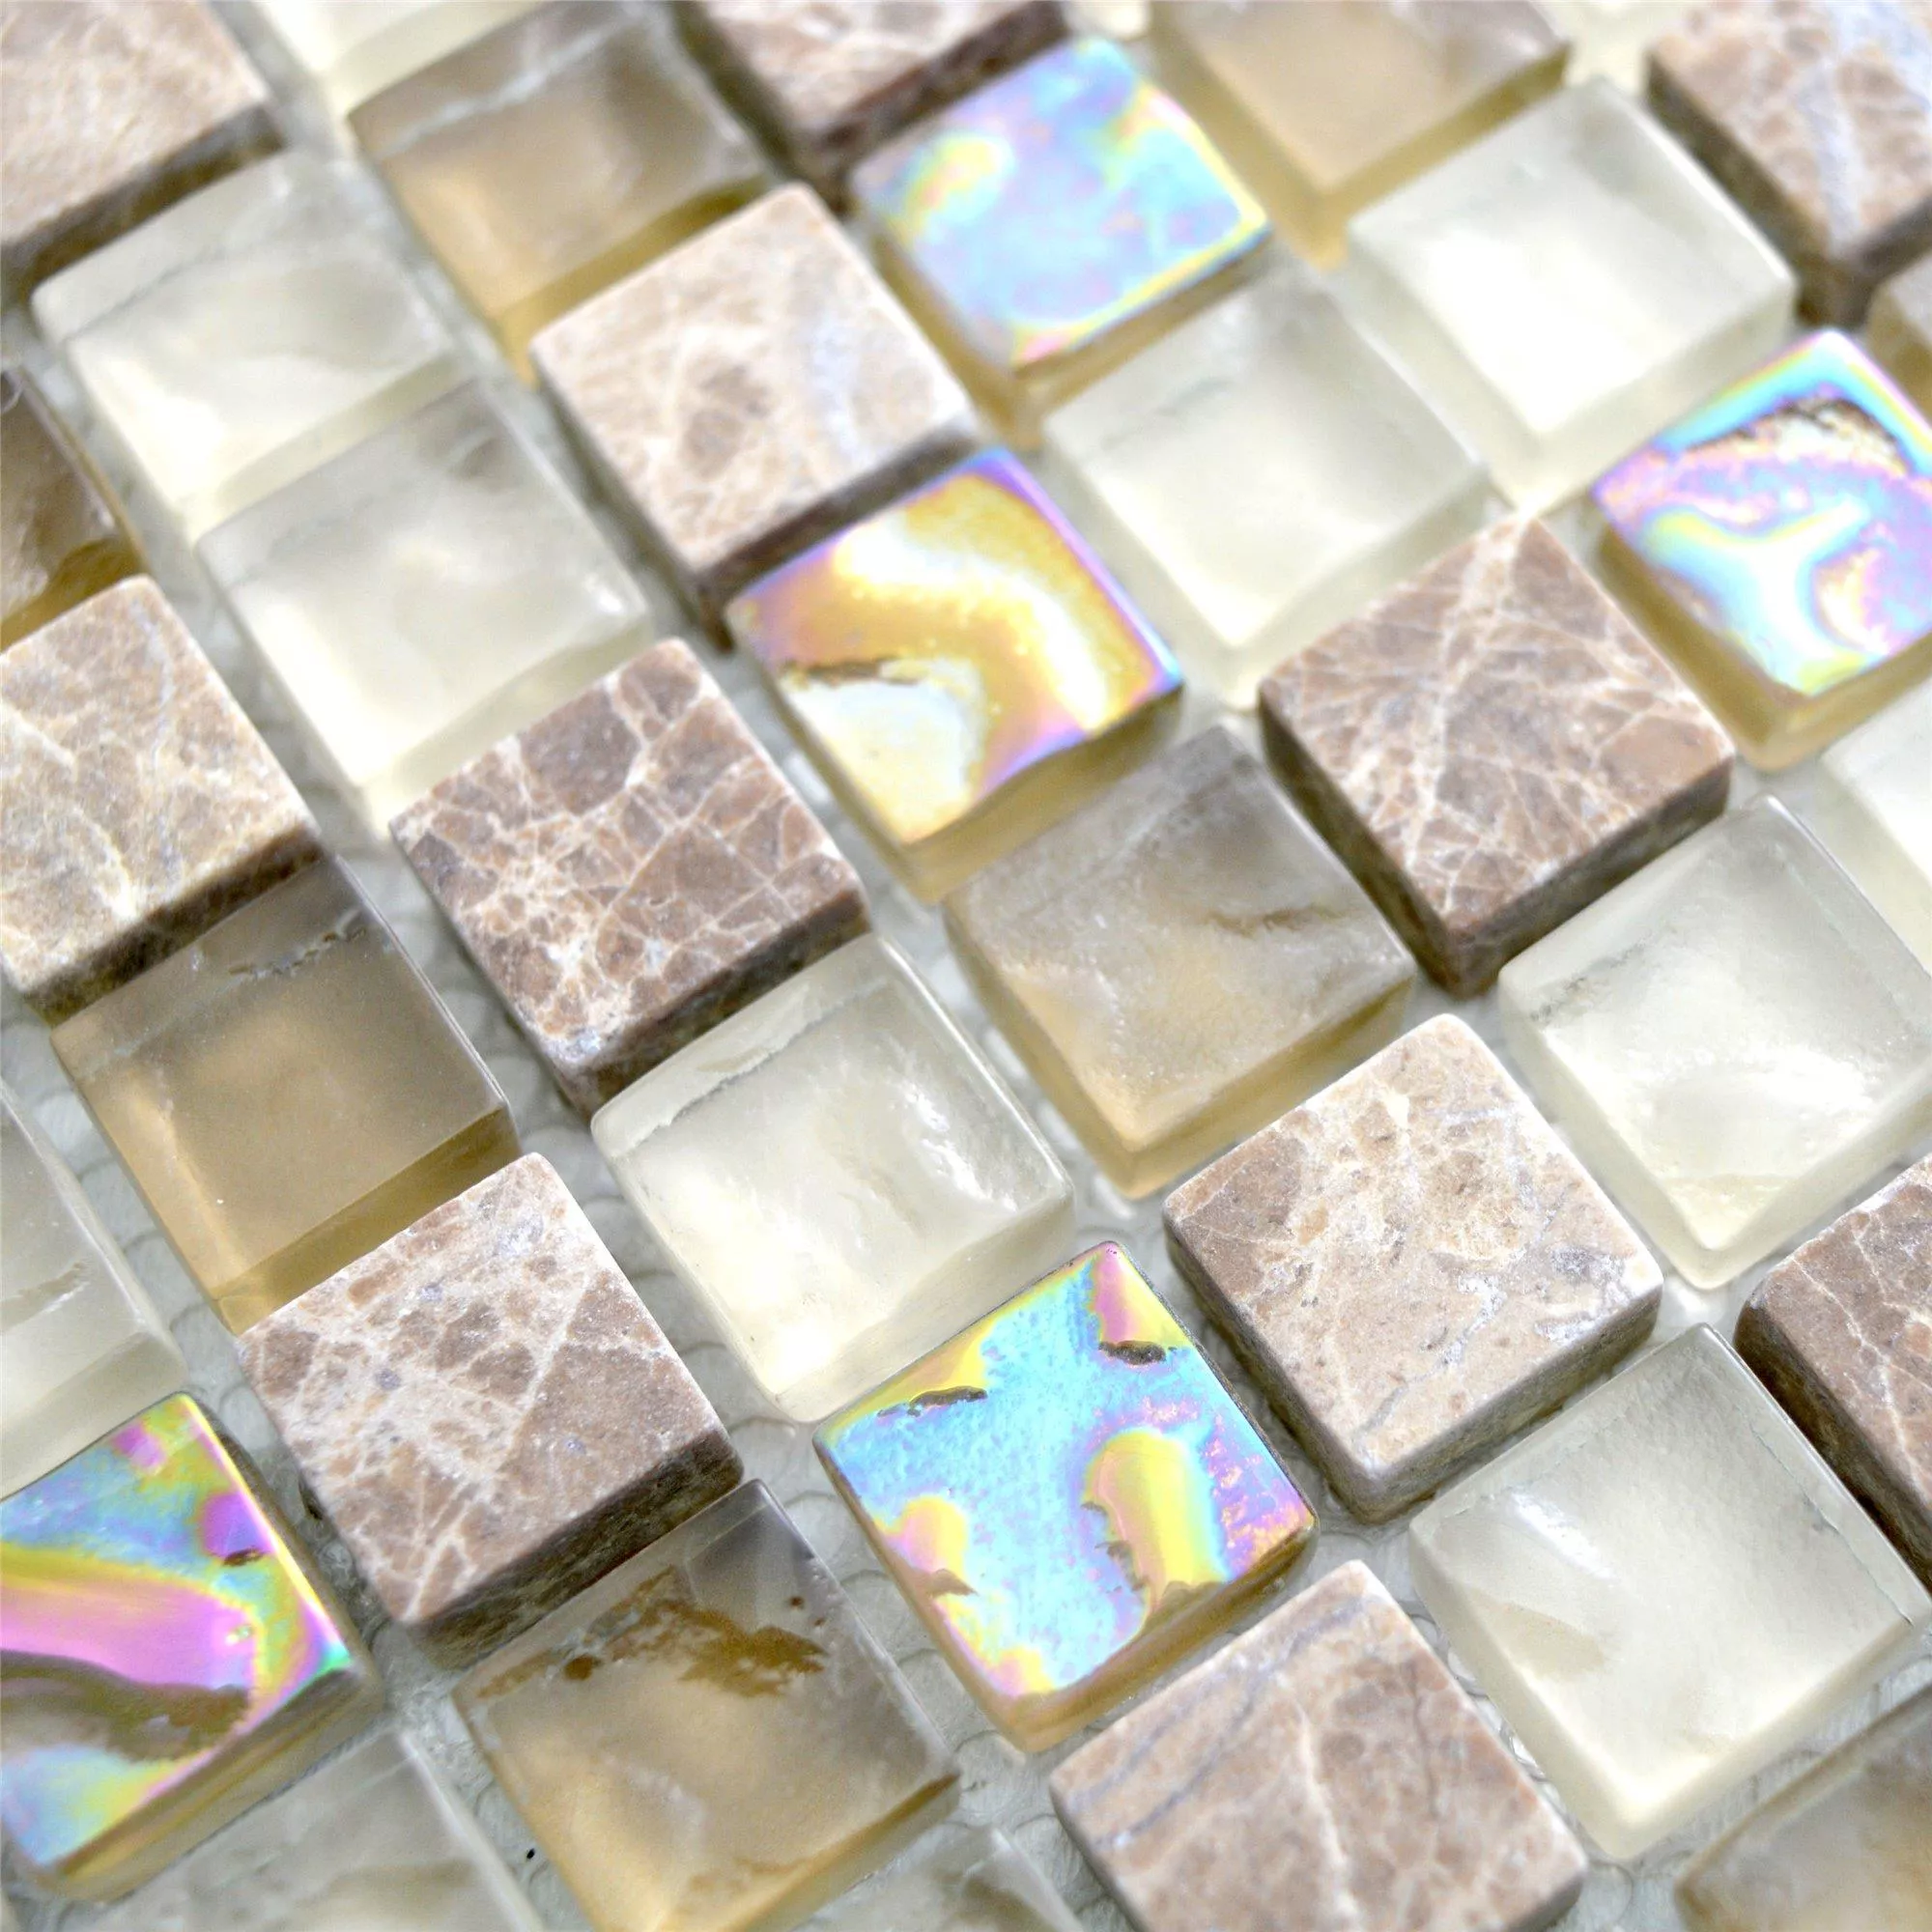 Mozaika Szklana Plytka Z Naturalnego Kamienia Nexus Jasnobrązowy Beżowy